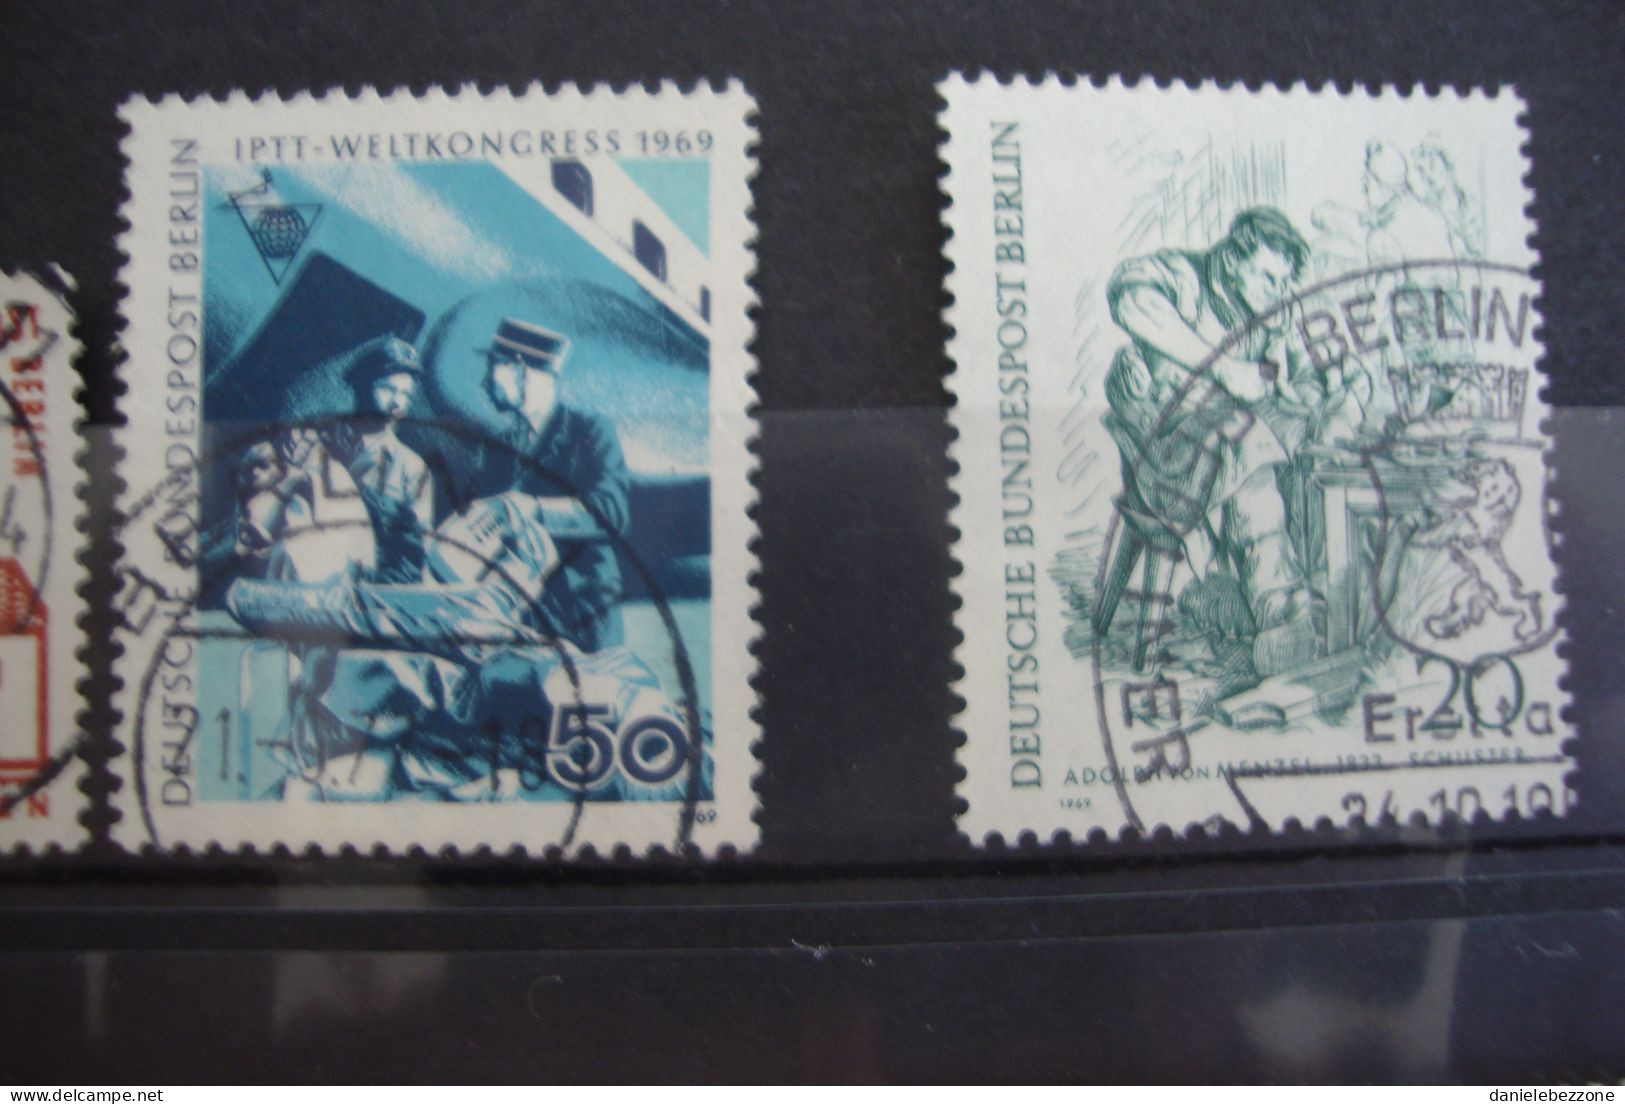 francobolli Berlino usati